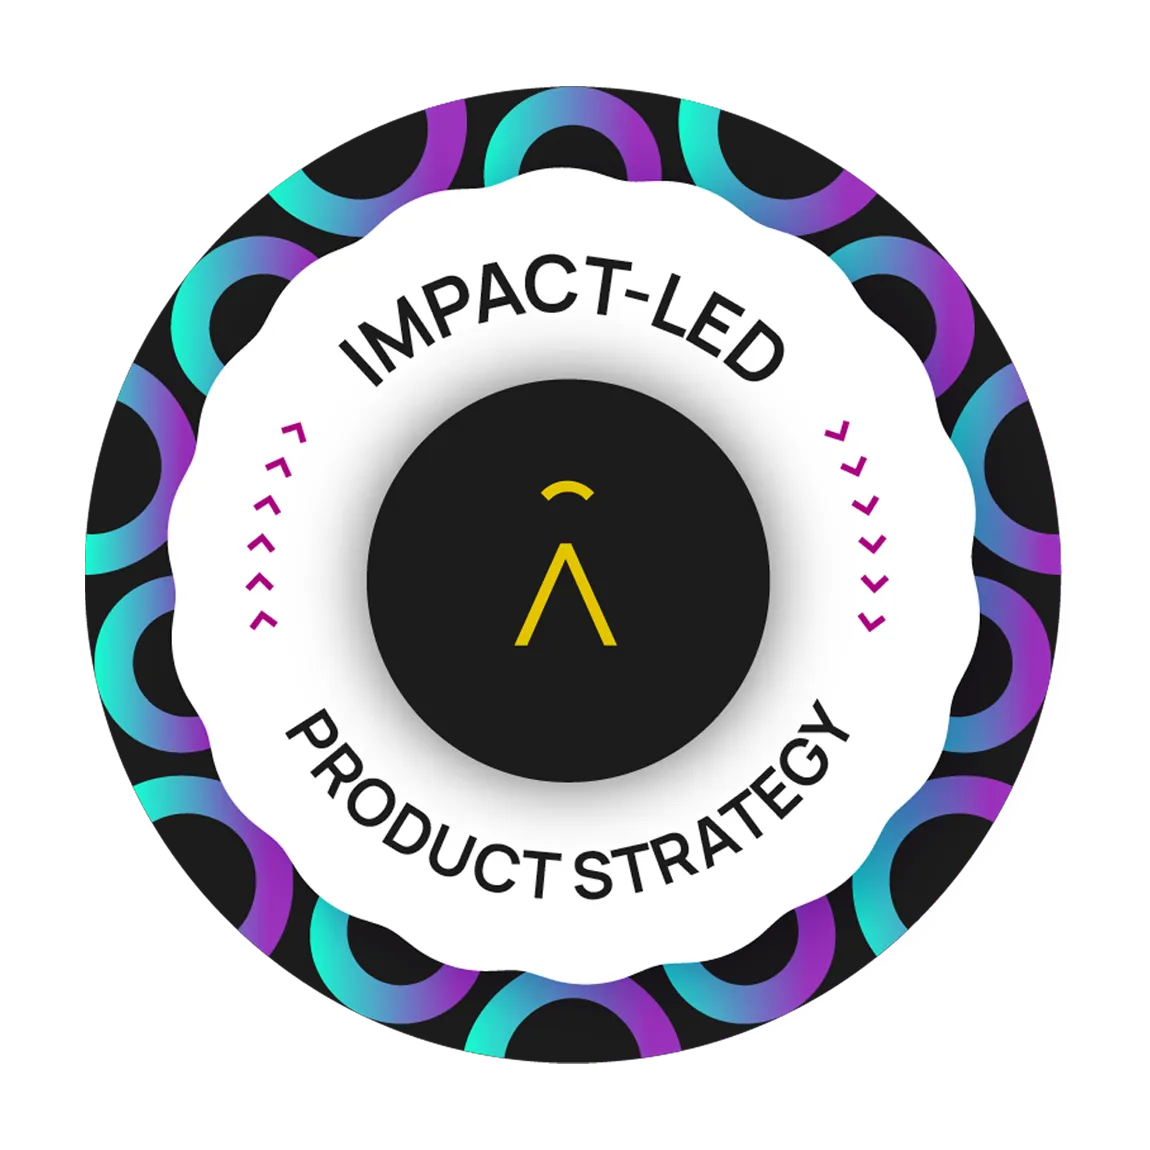 Impact-Led Product Strategy